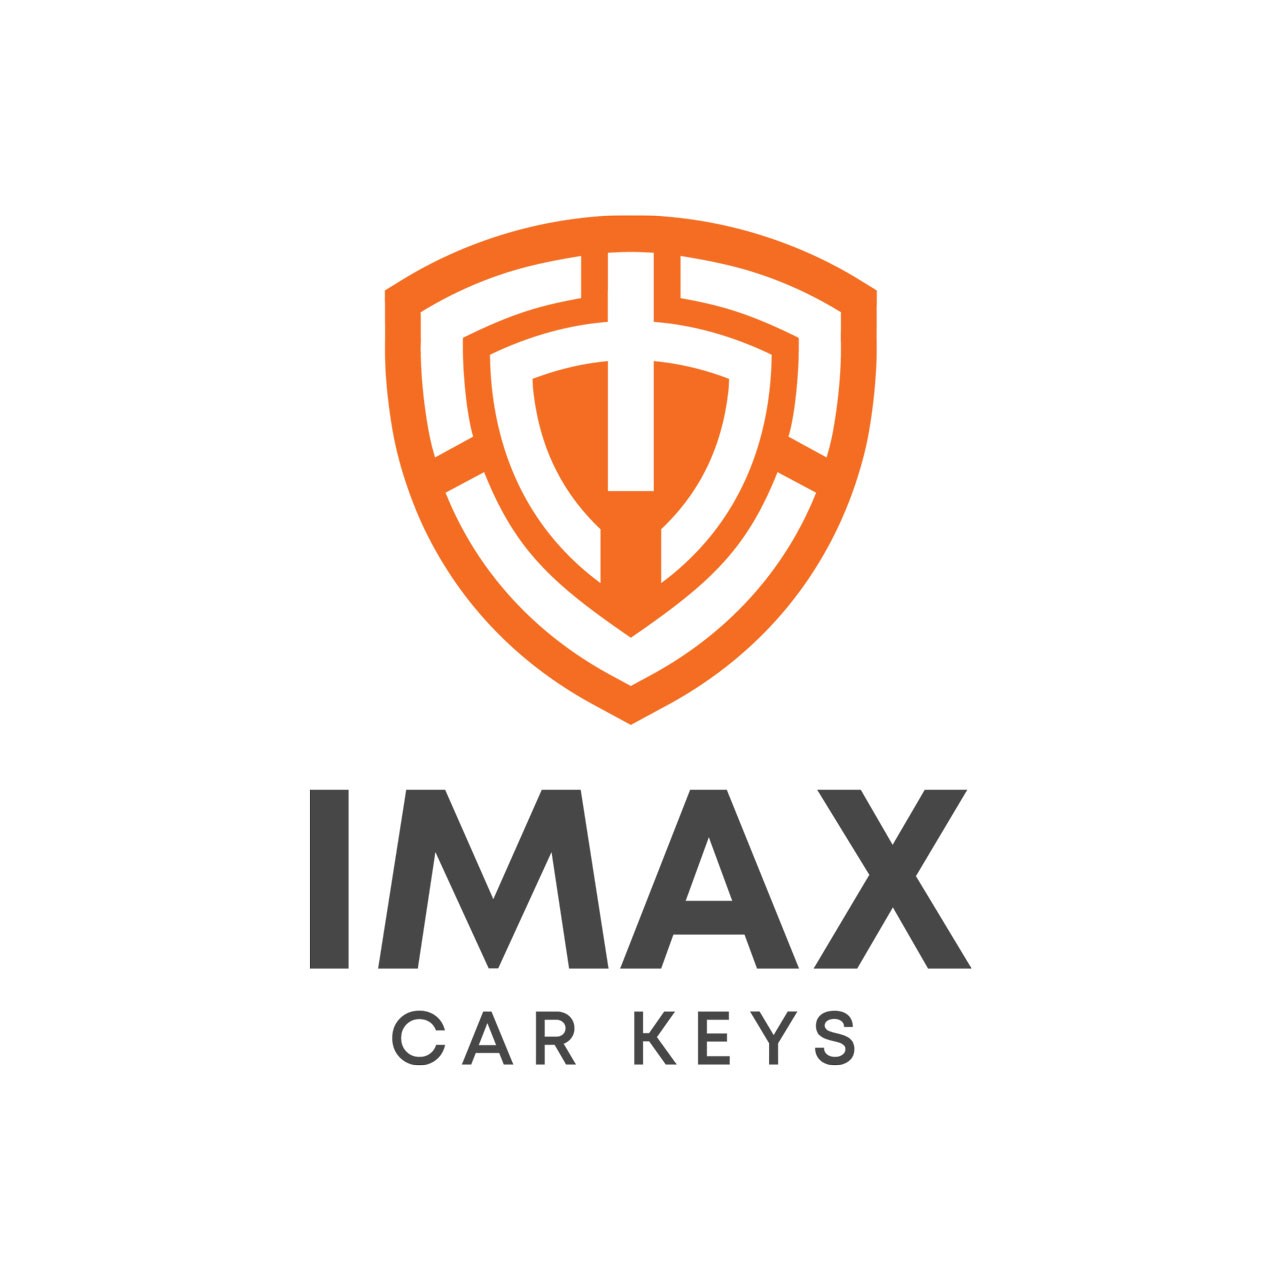 IMAX logo animation. - YouTube